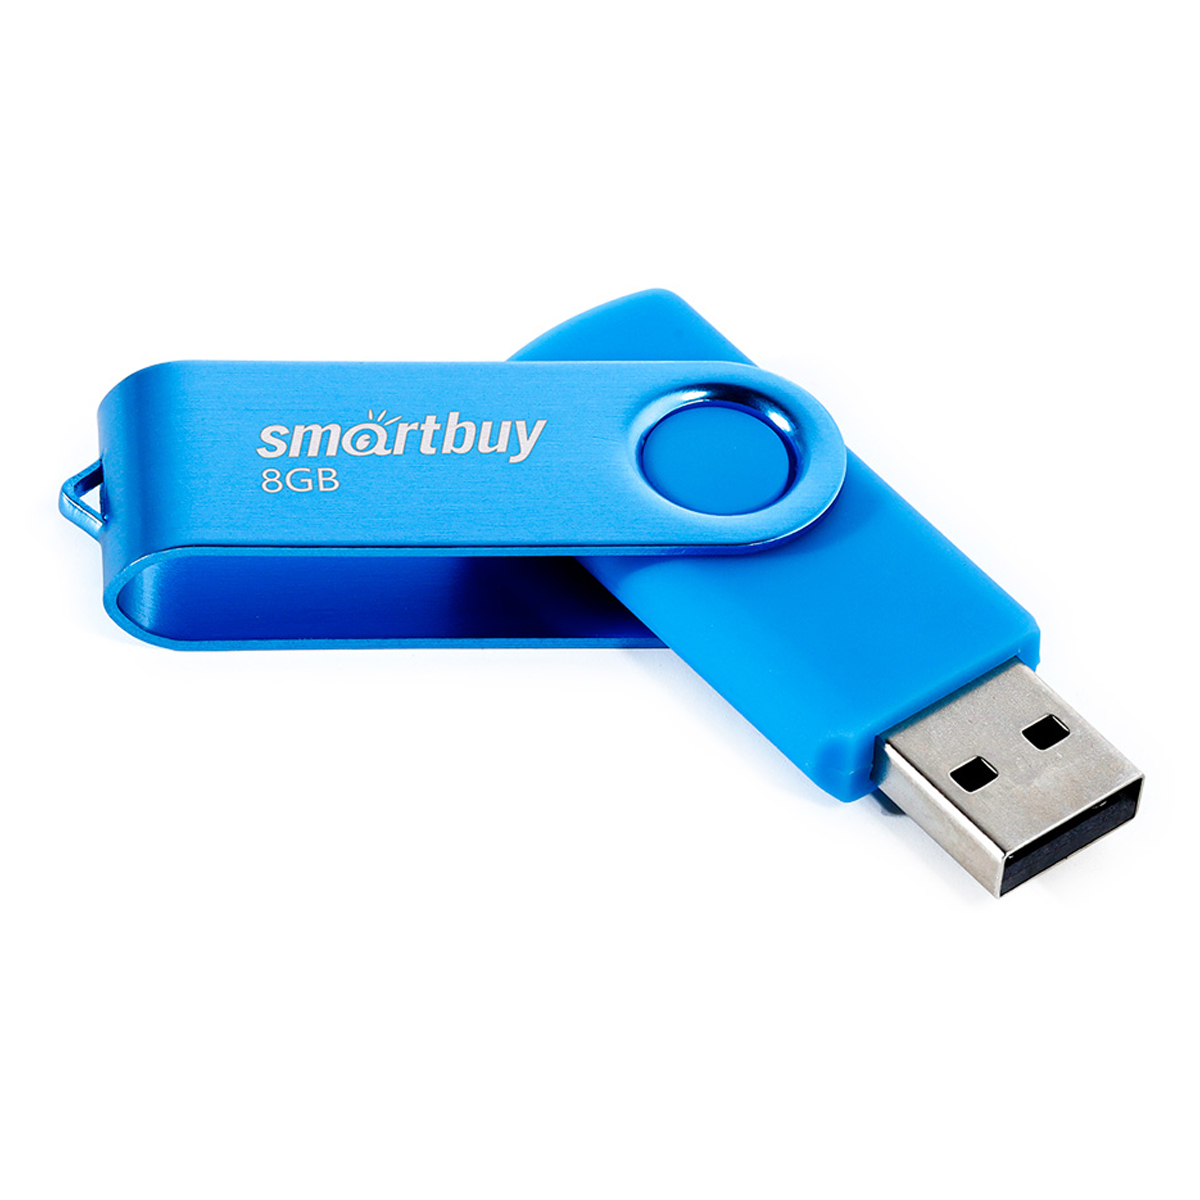  Smart Buy "Twist" 8GB, USB 2.0 Flash Drive, 